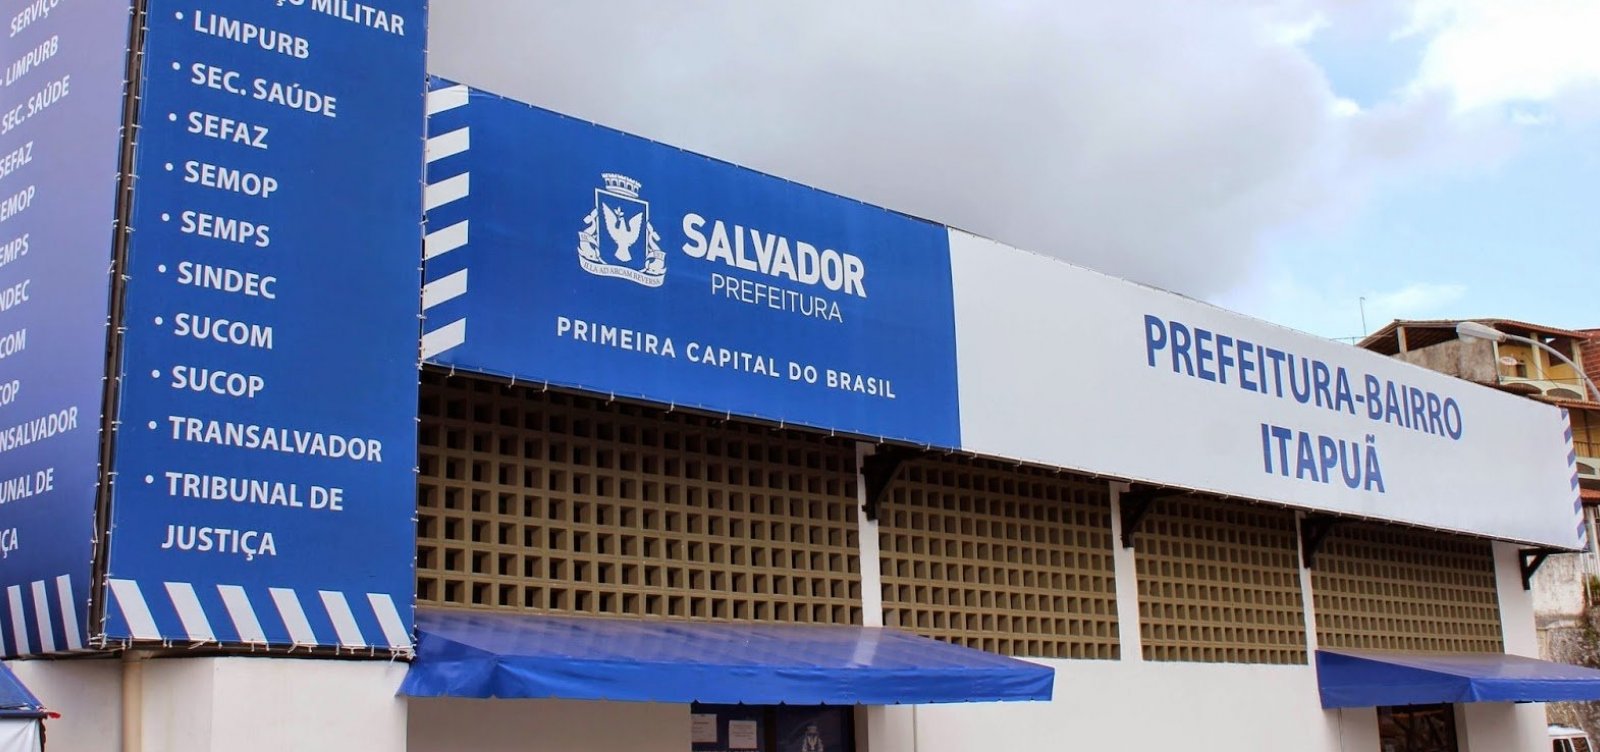 Prefeituras-bairro de Salvador passam a emitir carteira de trabalho 